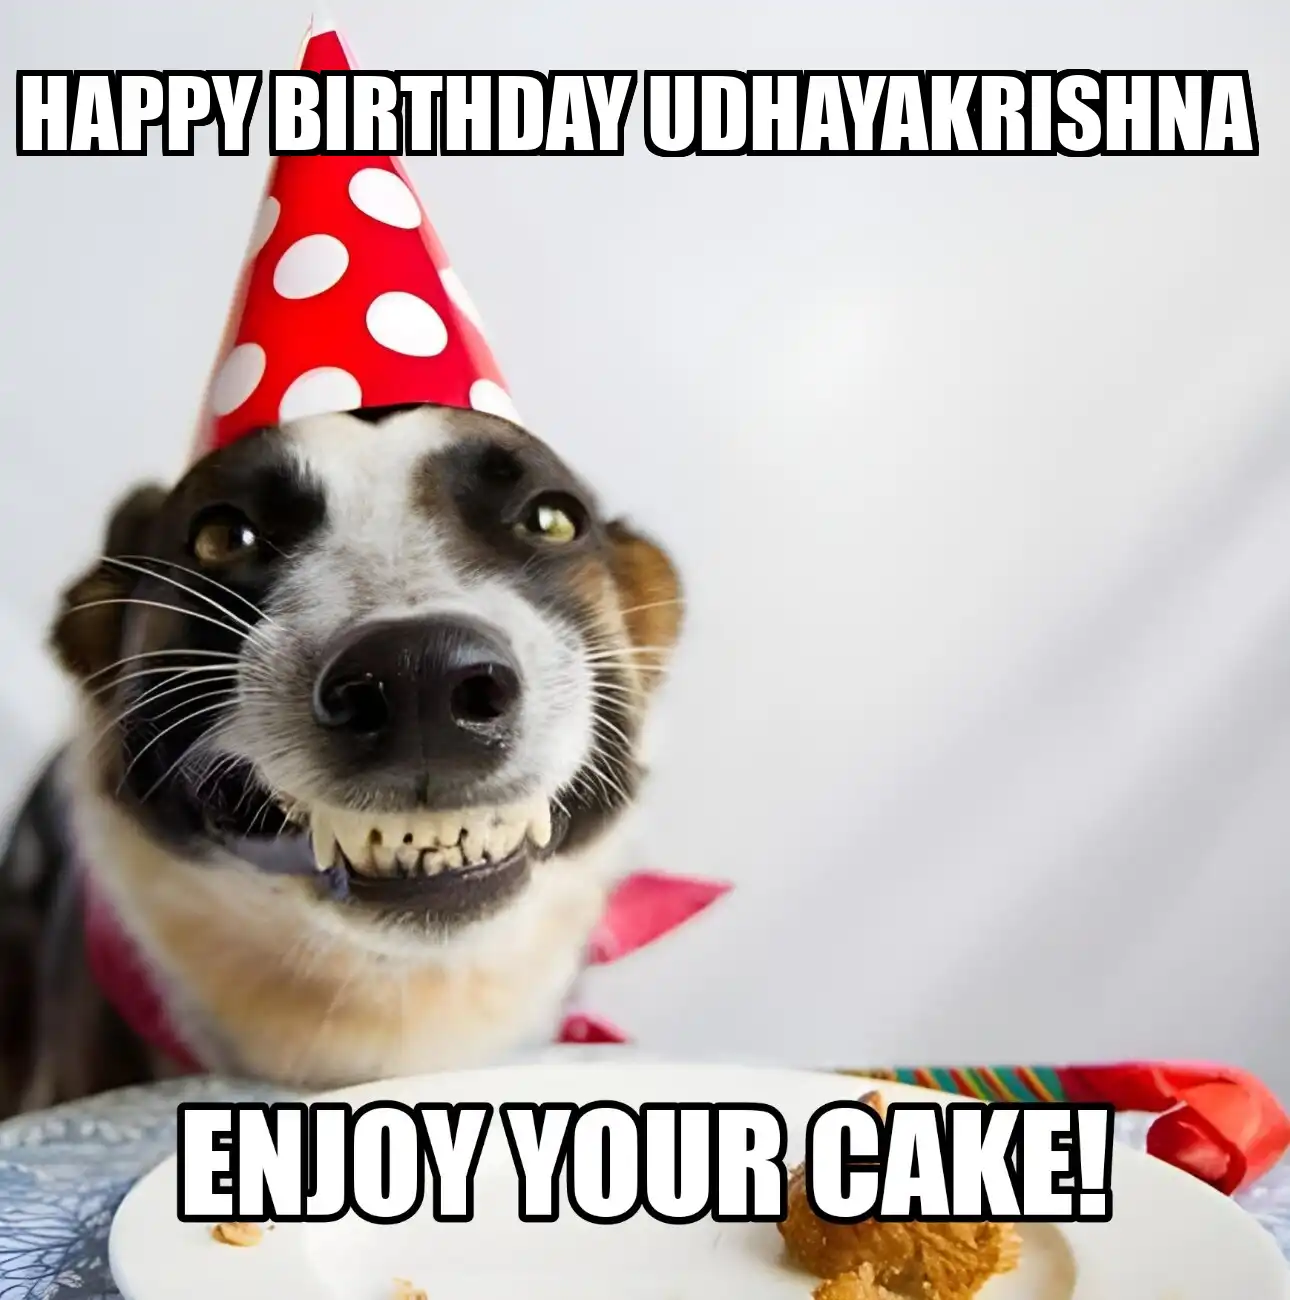 Happy Birthday Udhayakrishna Enjoy Your Cake Dog Meme